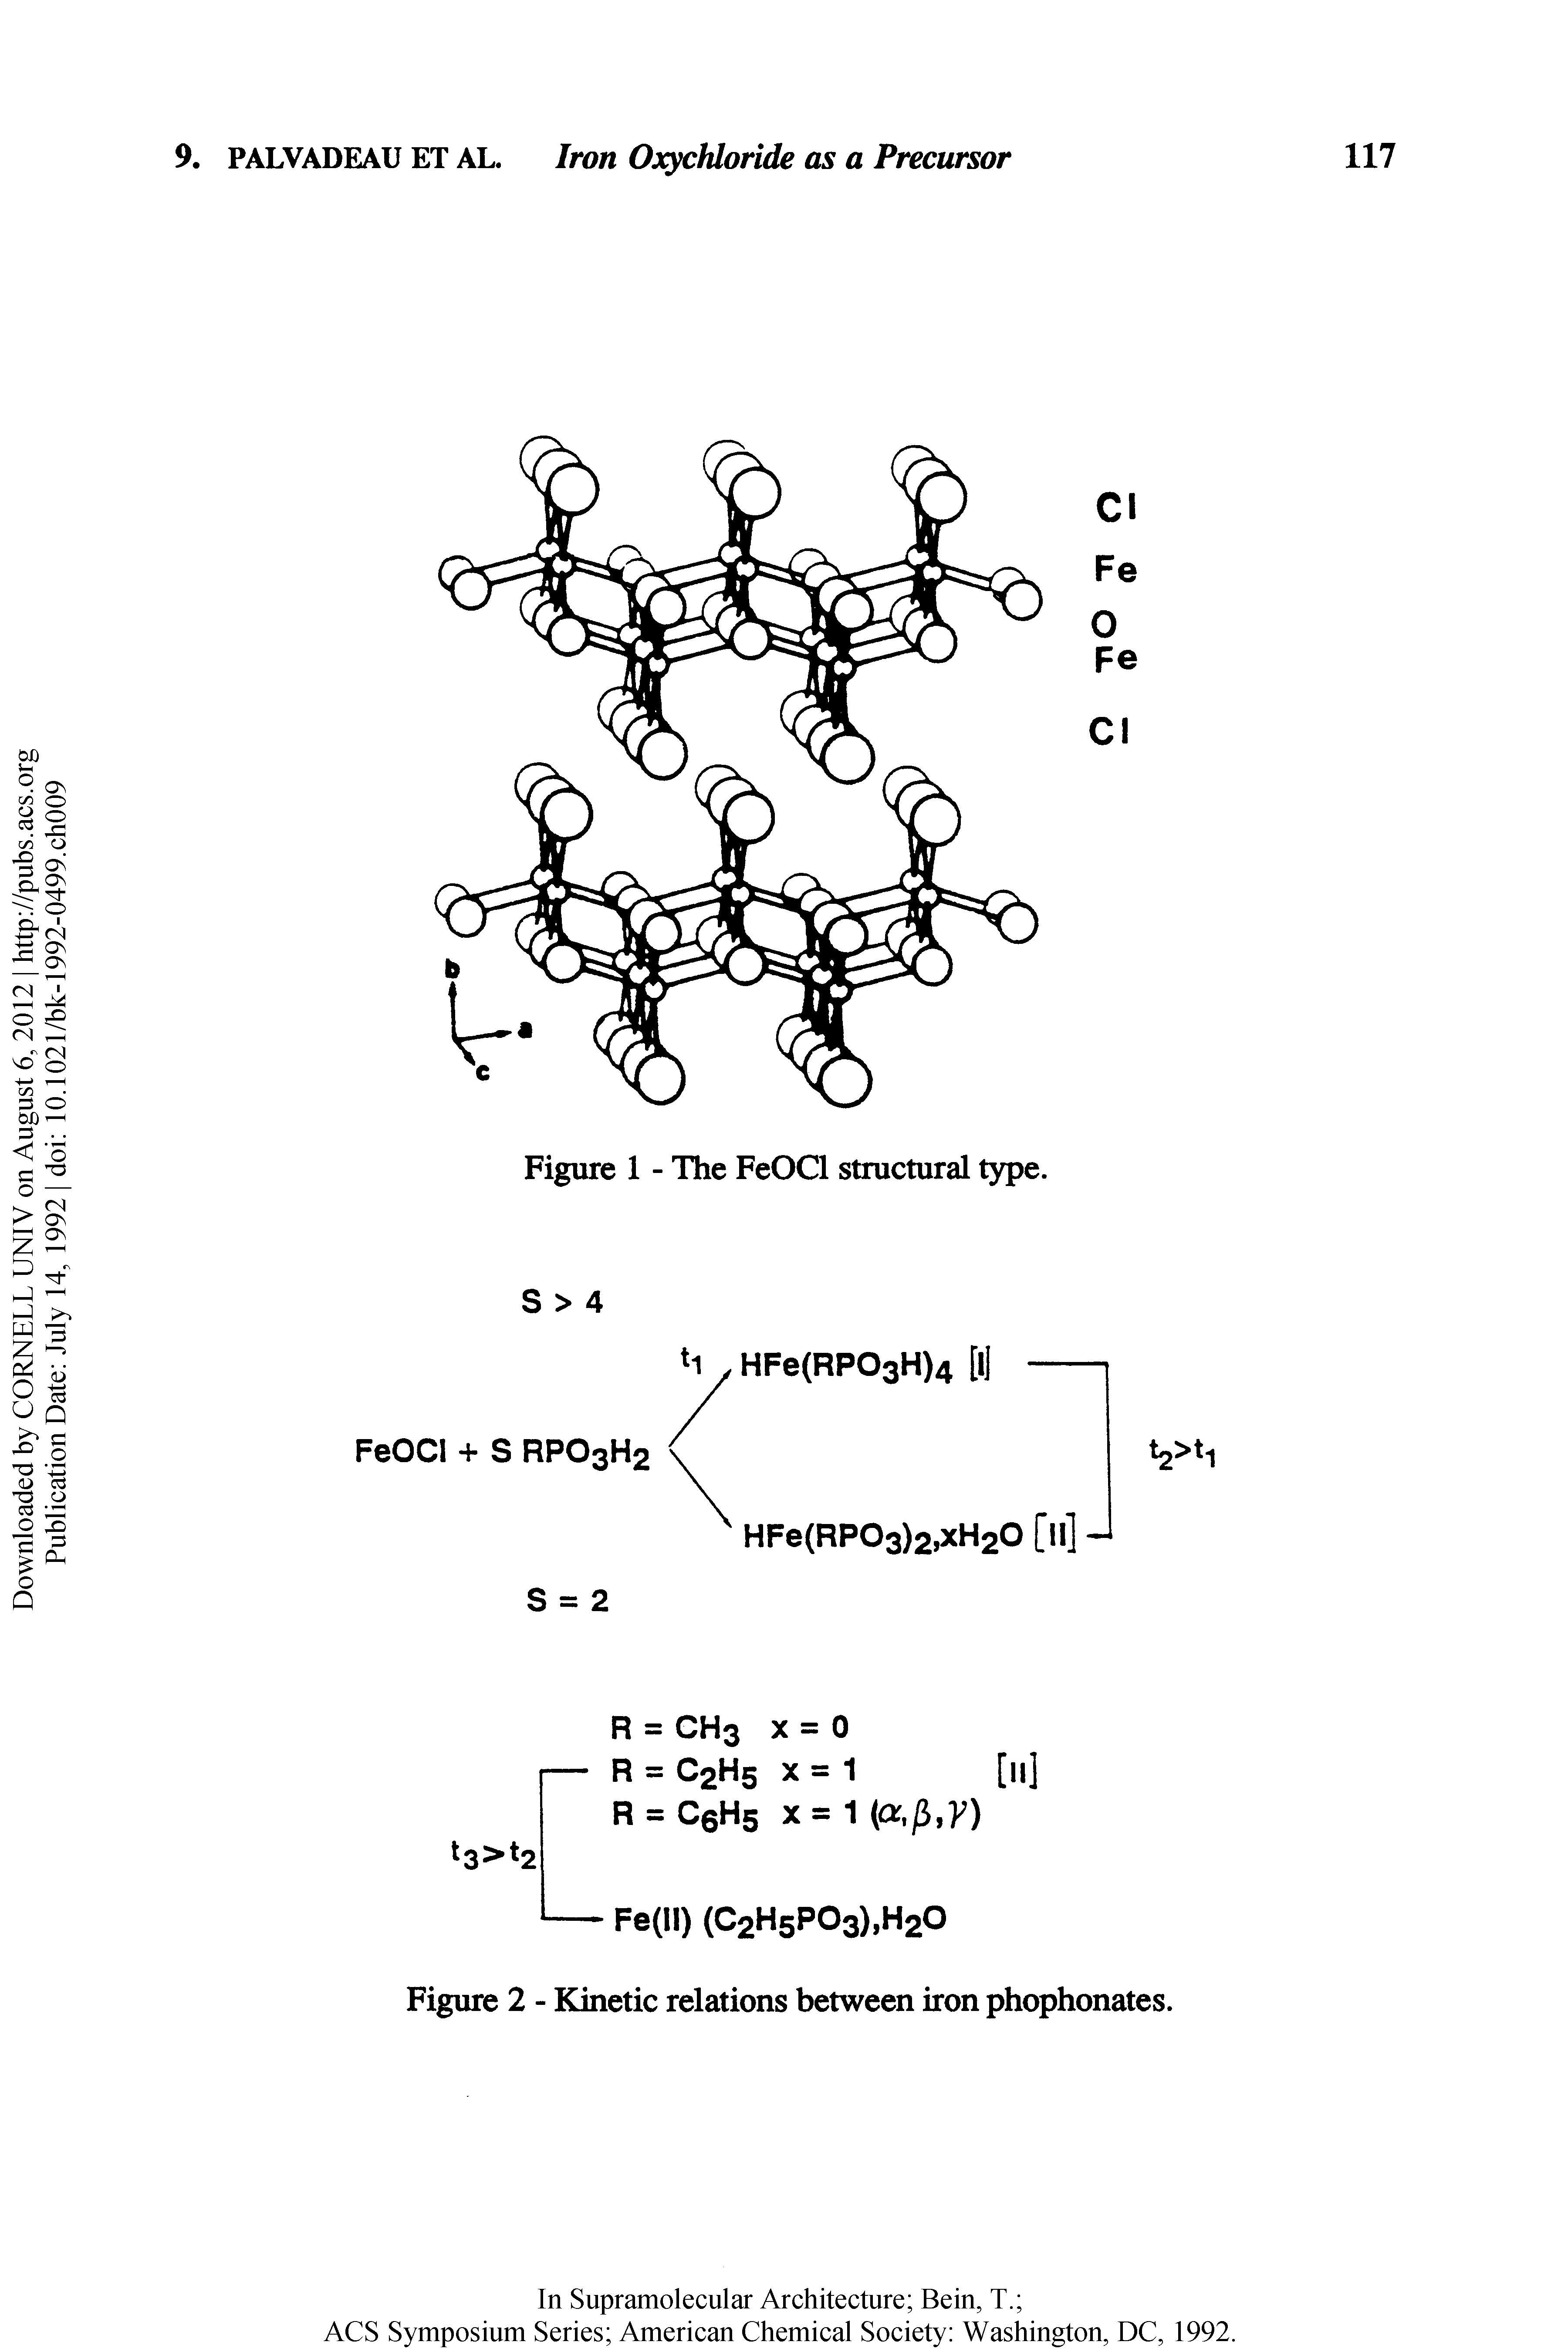 Figure 2 - Kinetic relations between iron phophonates.